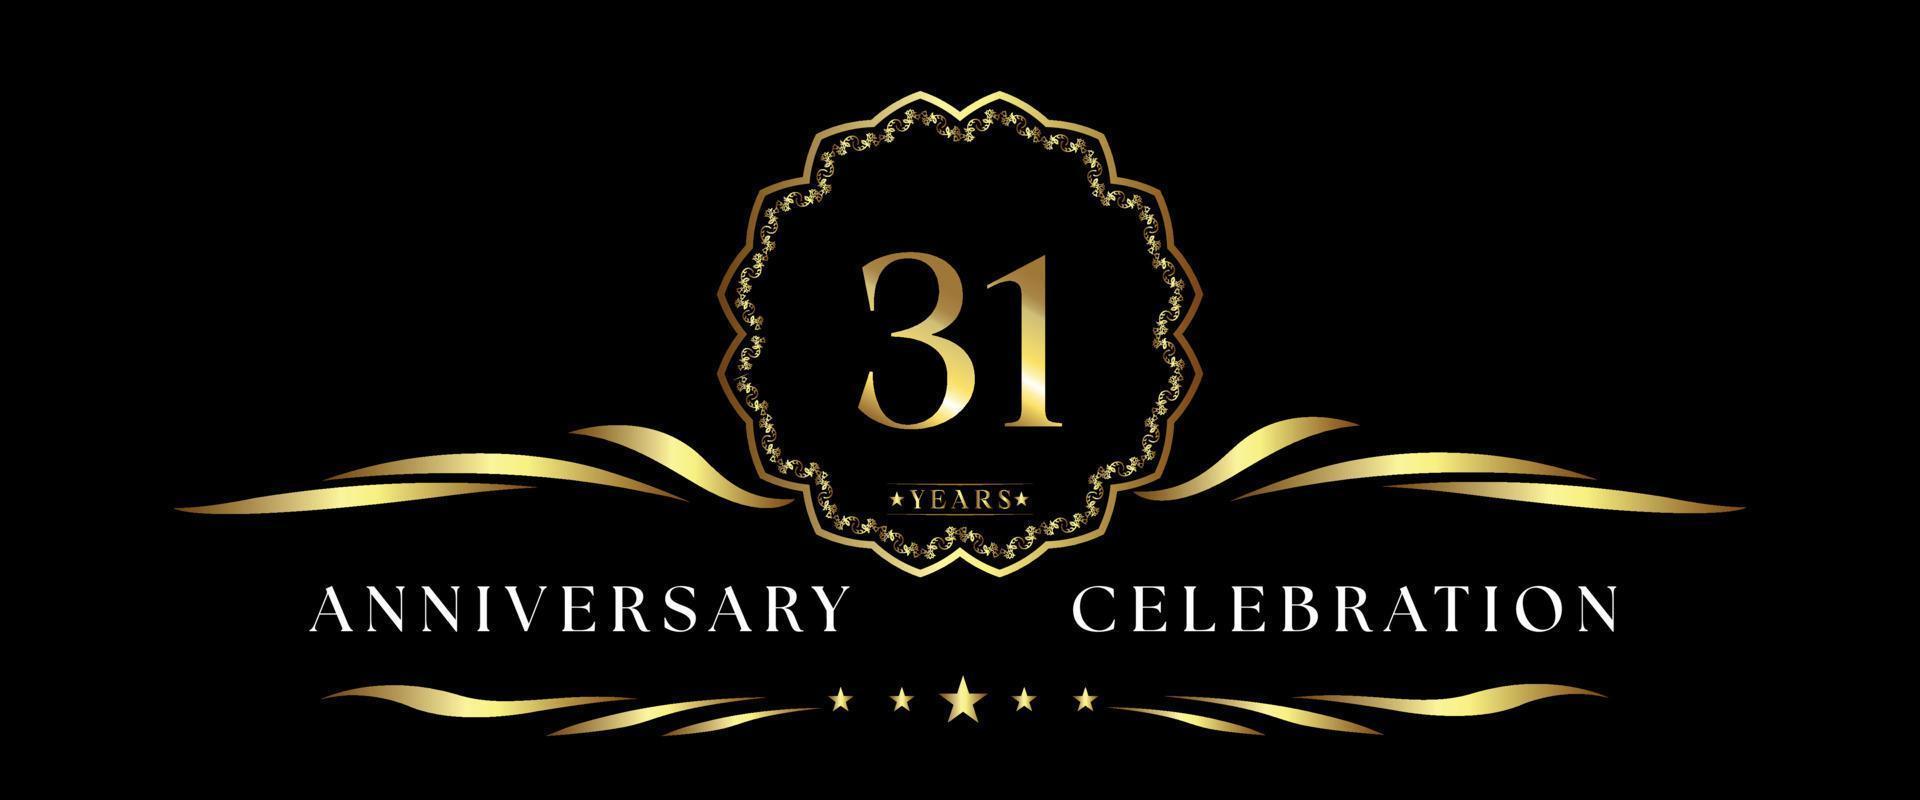 Célébration de l'anniversaire de 31 ans avec cadre décoratif doré isolé sur fond noir. création vectorielle pour carte de voeux, fête d'anniversaire, mariage, fête d'événement, cérémonie. Logo anniversaire 31 ans. vecteur